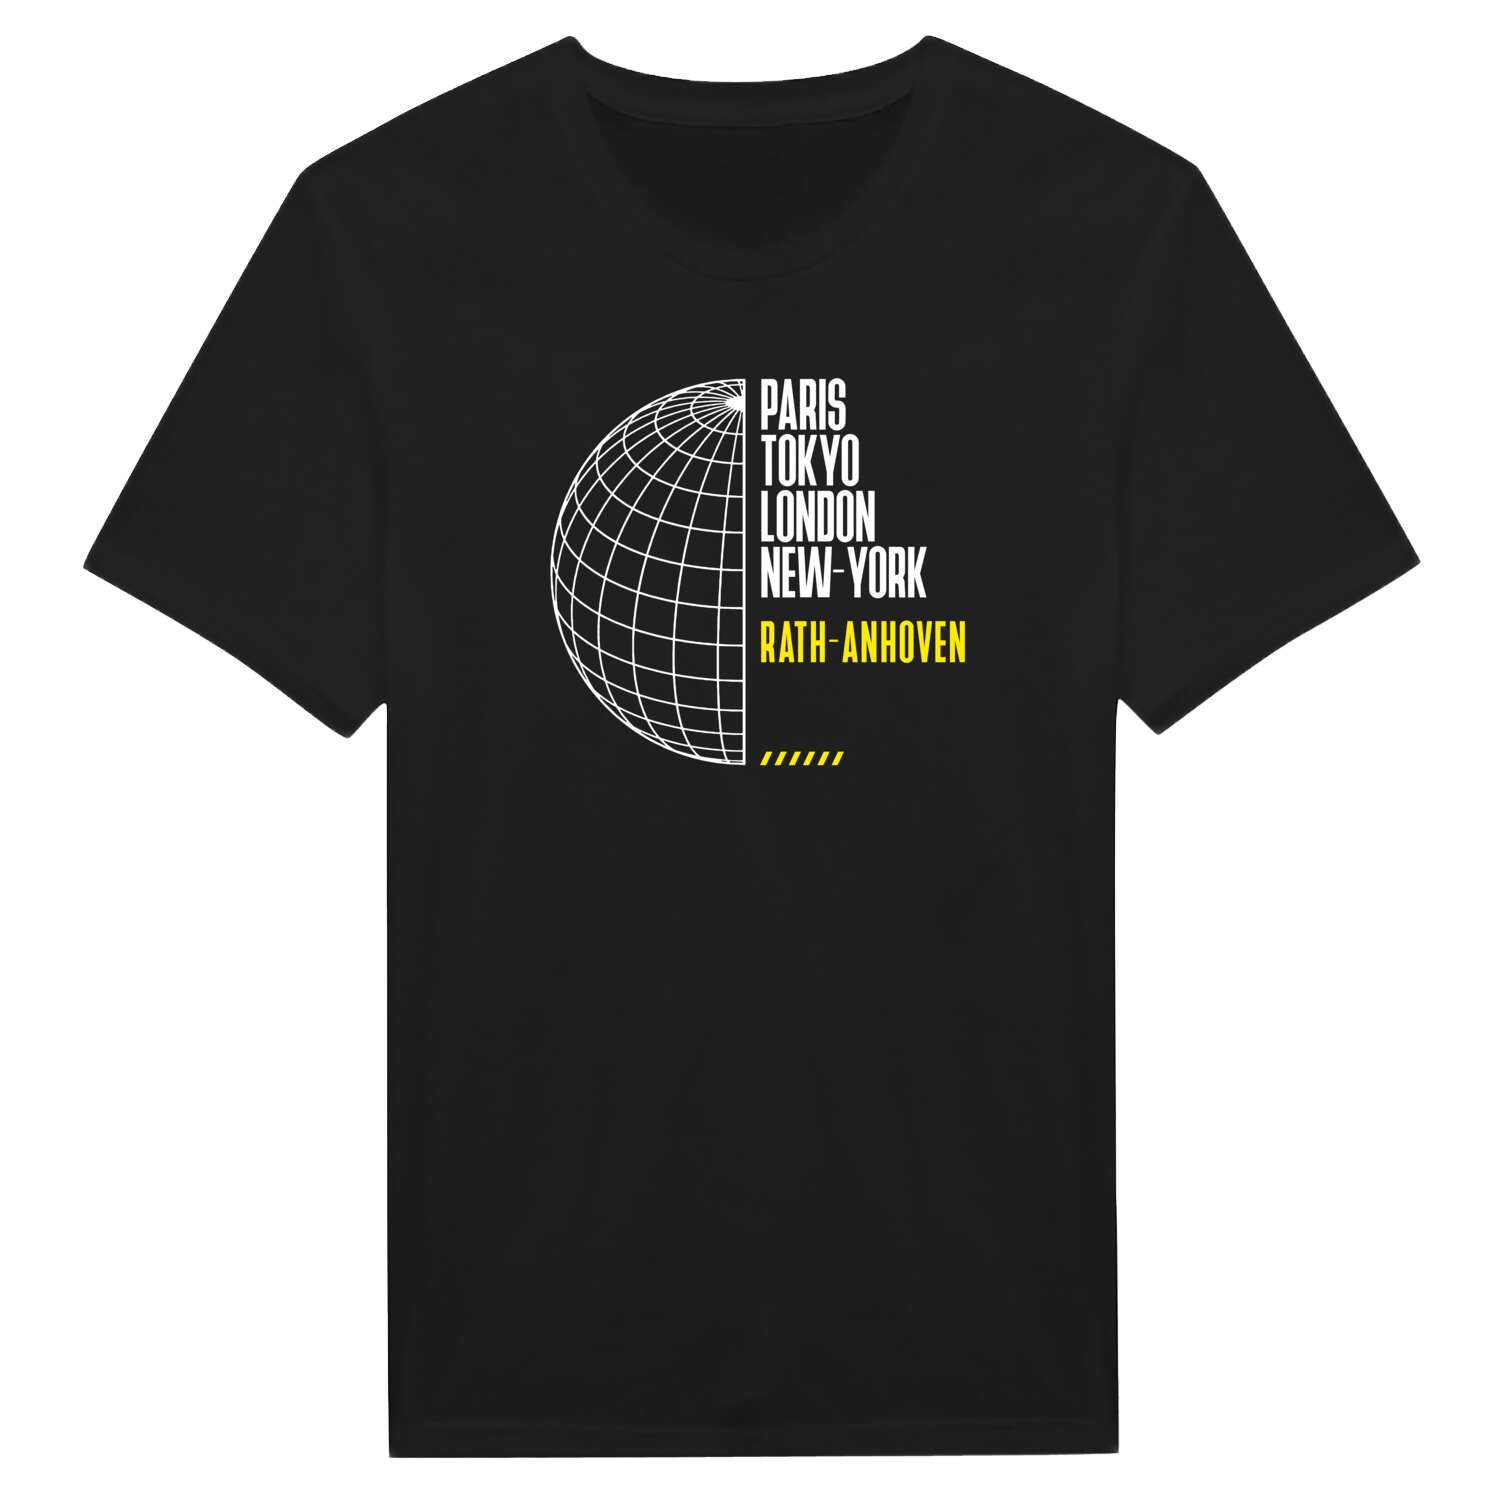 Rath-Anhoven T-Shirt »Paris Tokyo London«